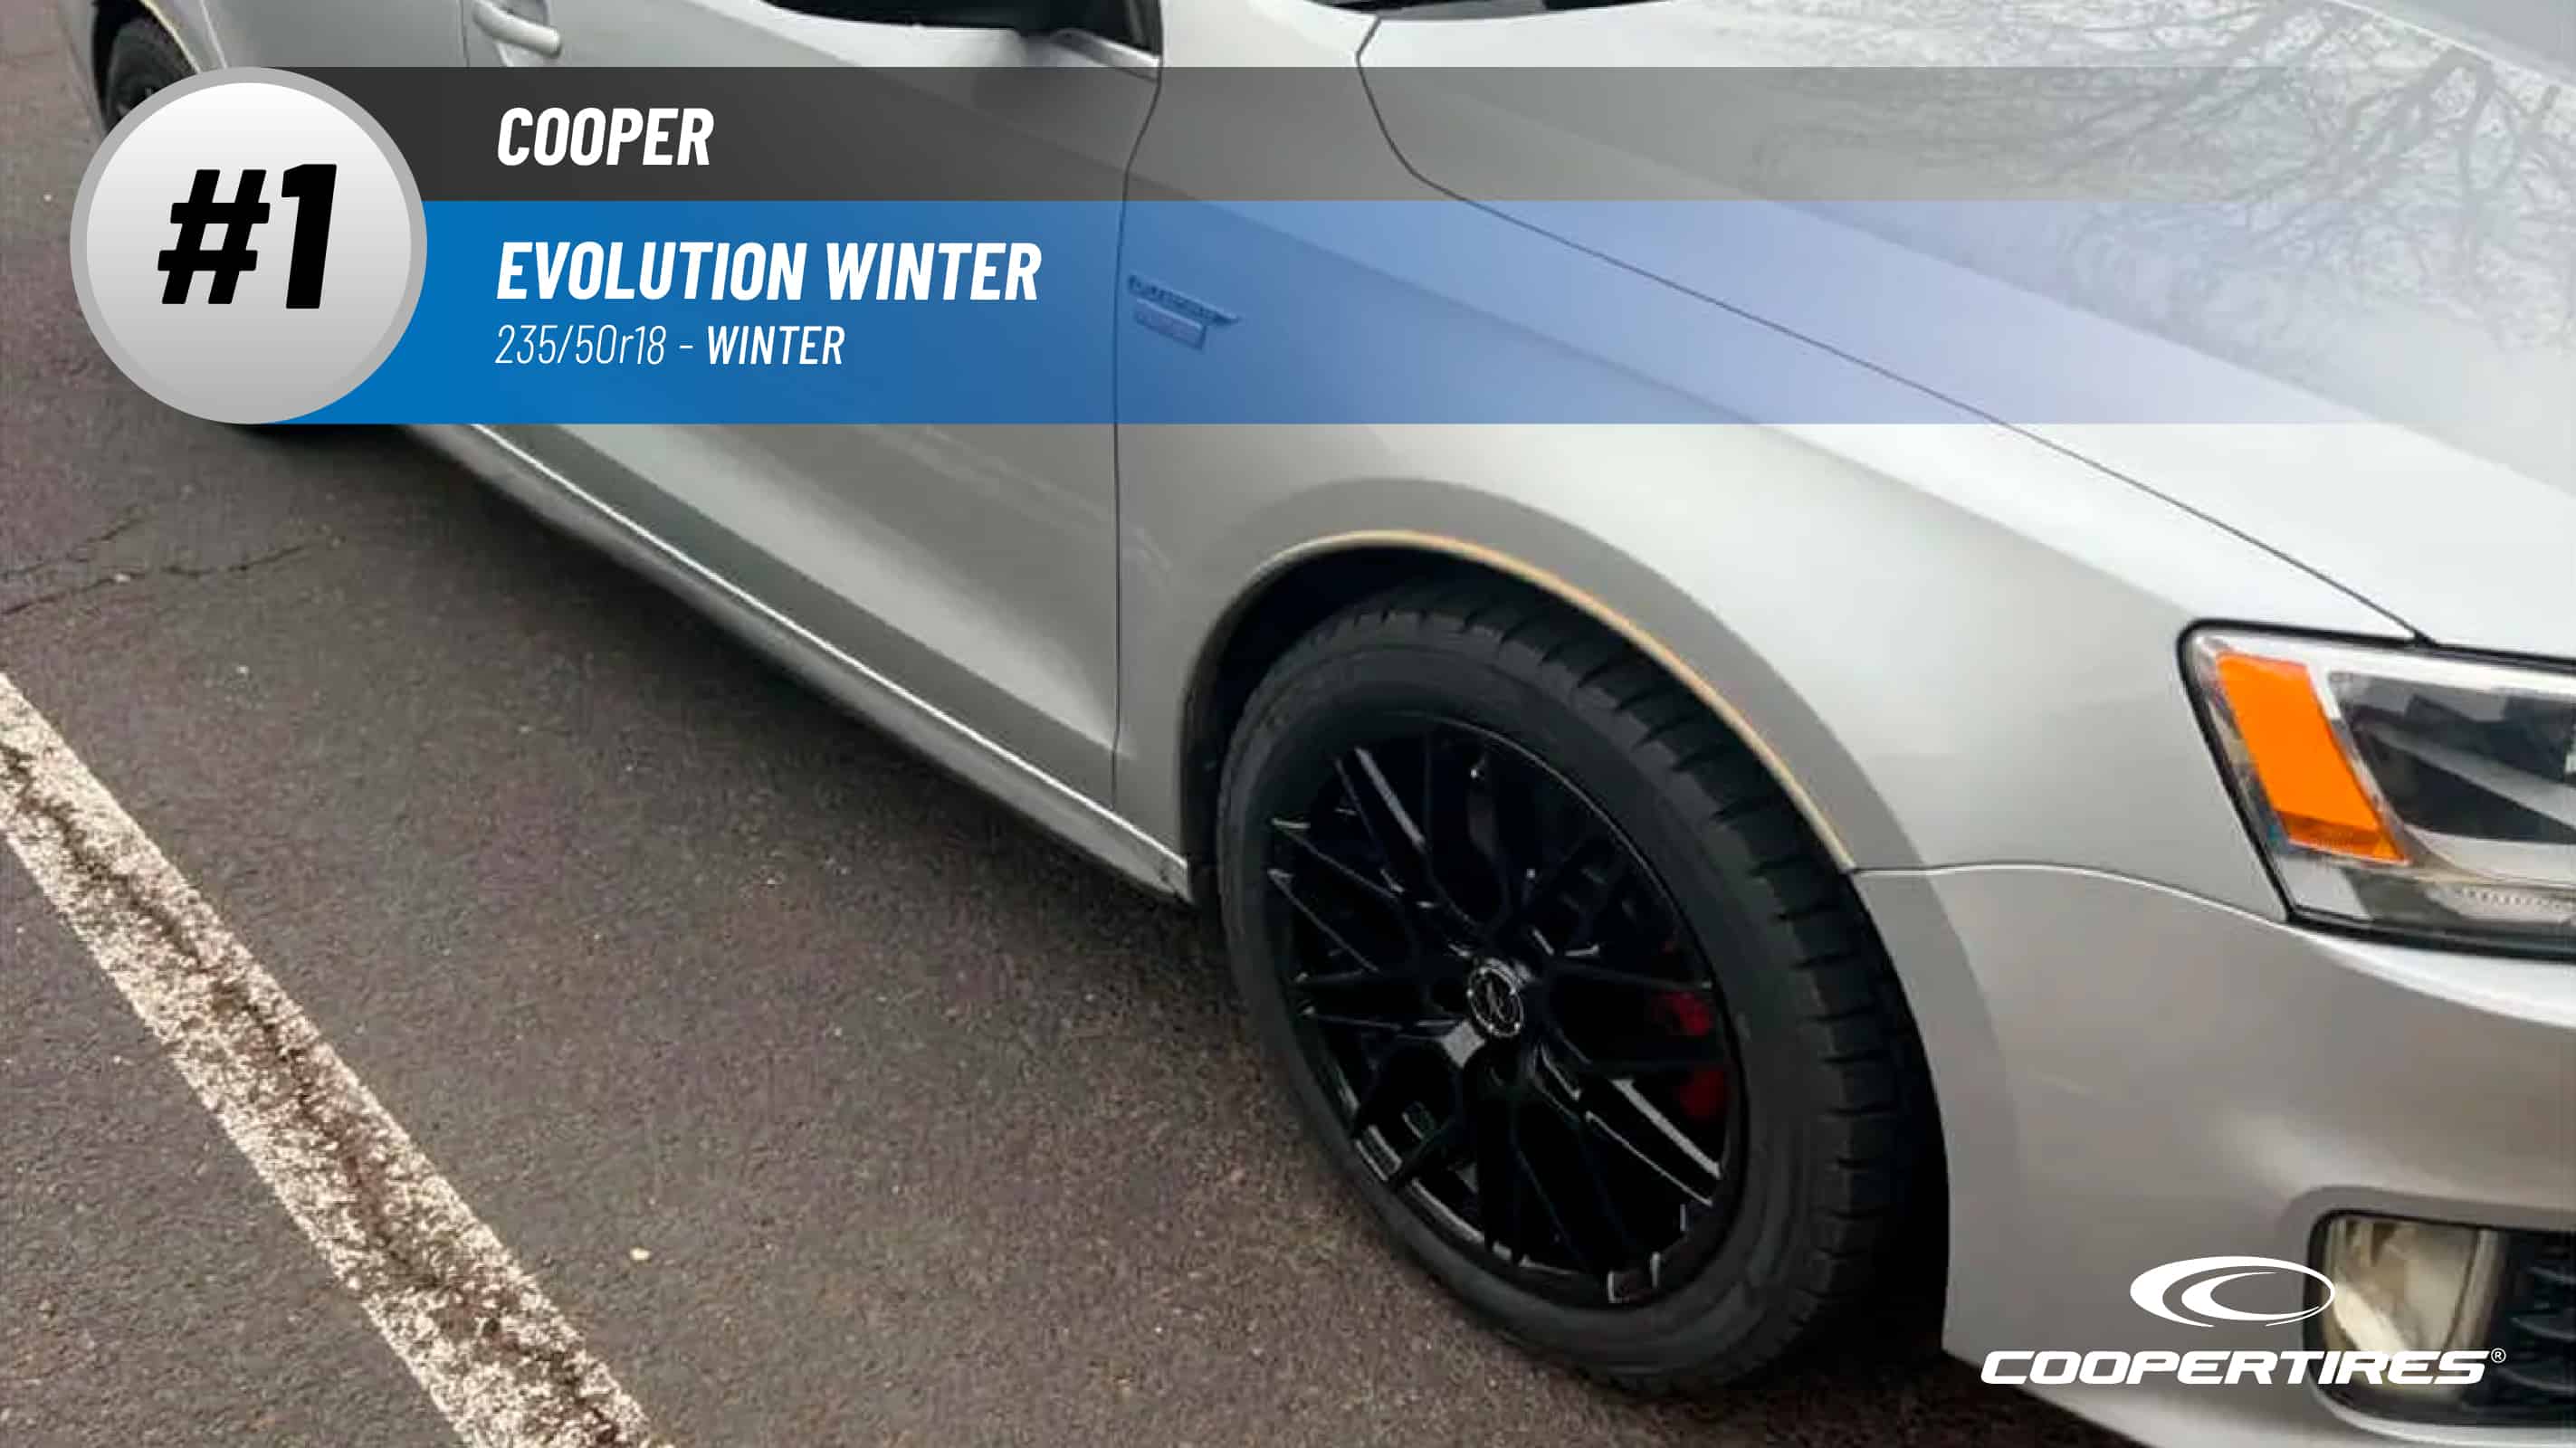 Top #1 Winter Tires: Cooper Evolution Winter – 235/50r18